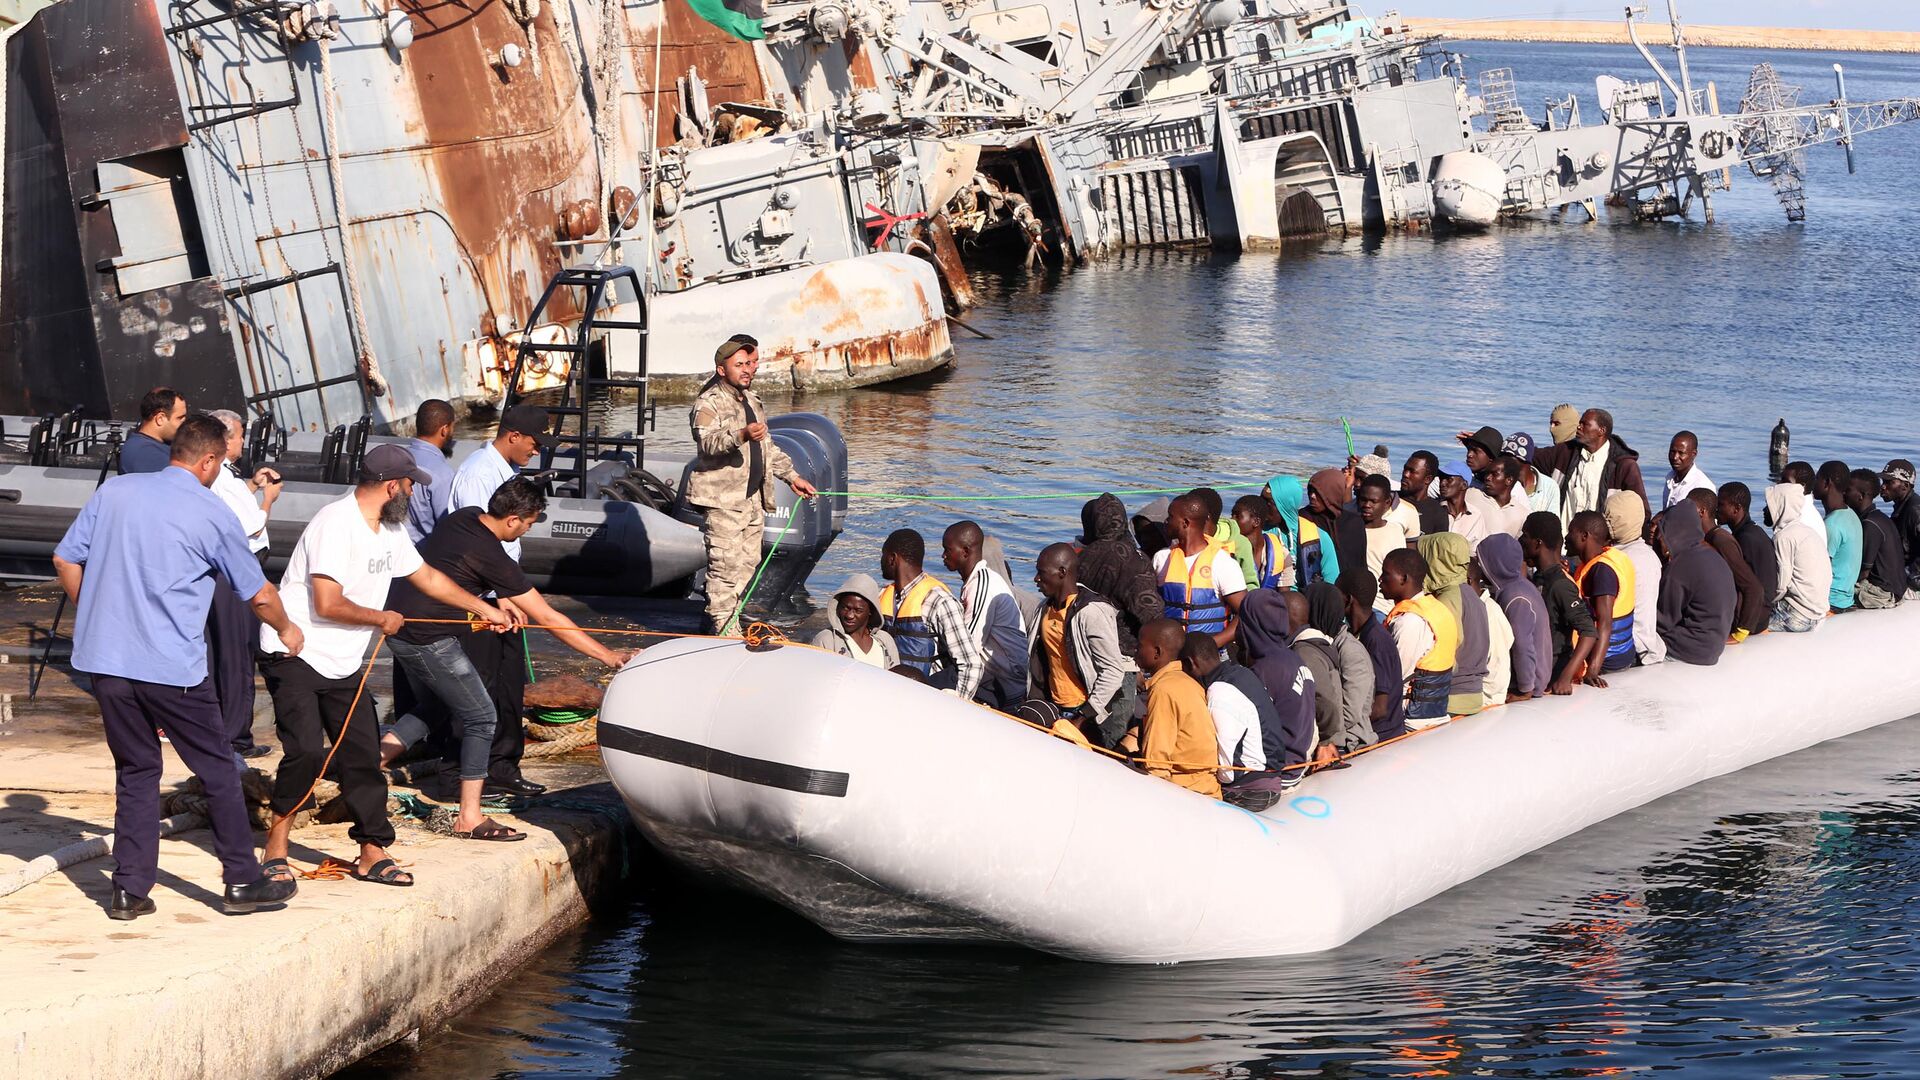  خفر السواحل الليبي يقوم بسحب قارب يحمل مهاجرين أفارقة، تم إنقاذهم أثناء محاولتهم الوصول إلى أوروبا بطريقة غير شرعية، في قاعدة بحرية بالقرب من العاصمة طرابلس في 29 سبتمبر/ أيلول 2015. - سبوتنيك عربي, 1920, 26.11.2021